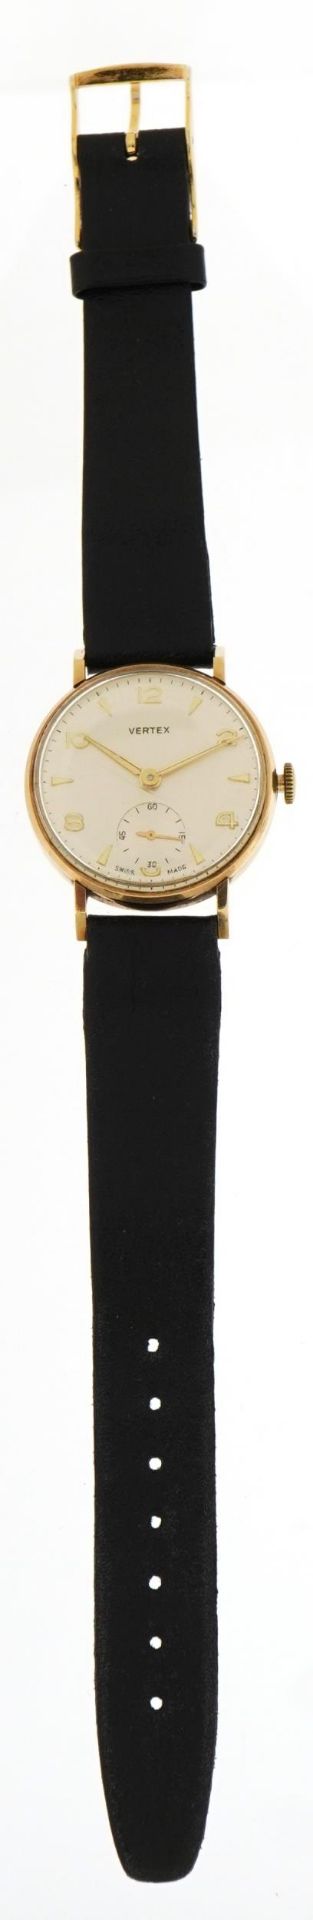 Vertex, vintage gentlemen's 9ct gold manual wind wristwatch, the case 30mm in diameter, total 31.9g - Bild 2 aus 4